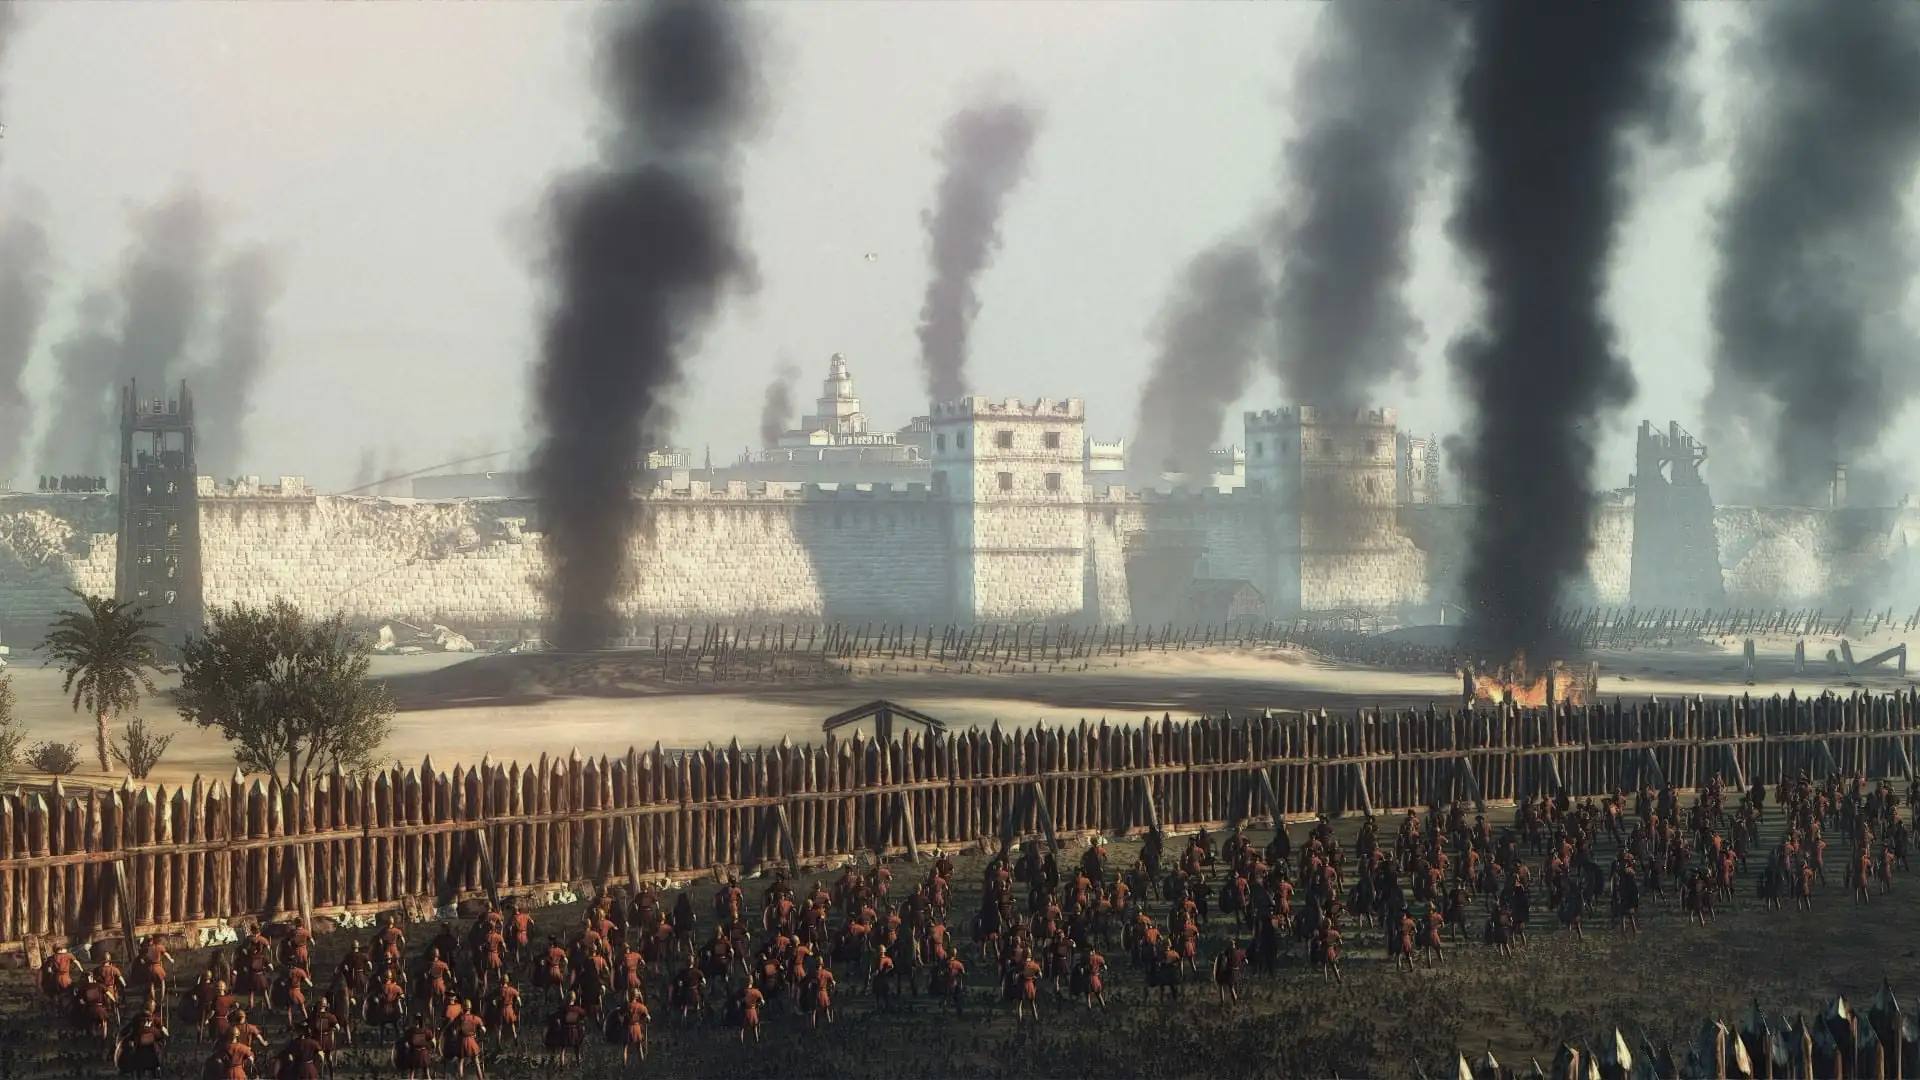 دانلود مد Ancient Empires برای بازی Total War: Attila